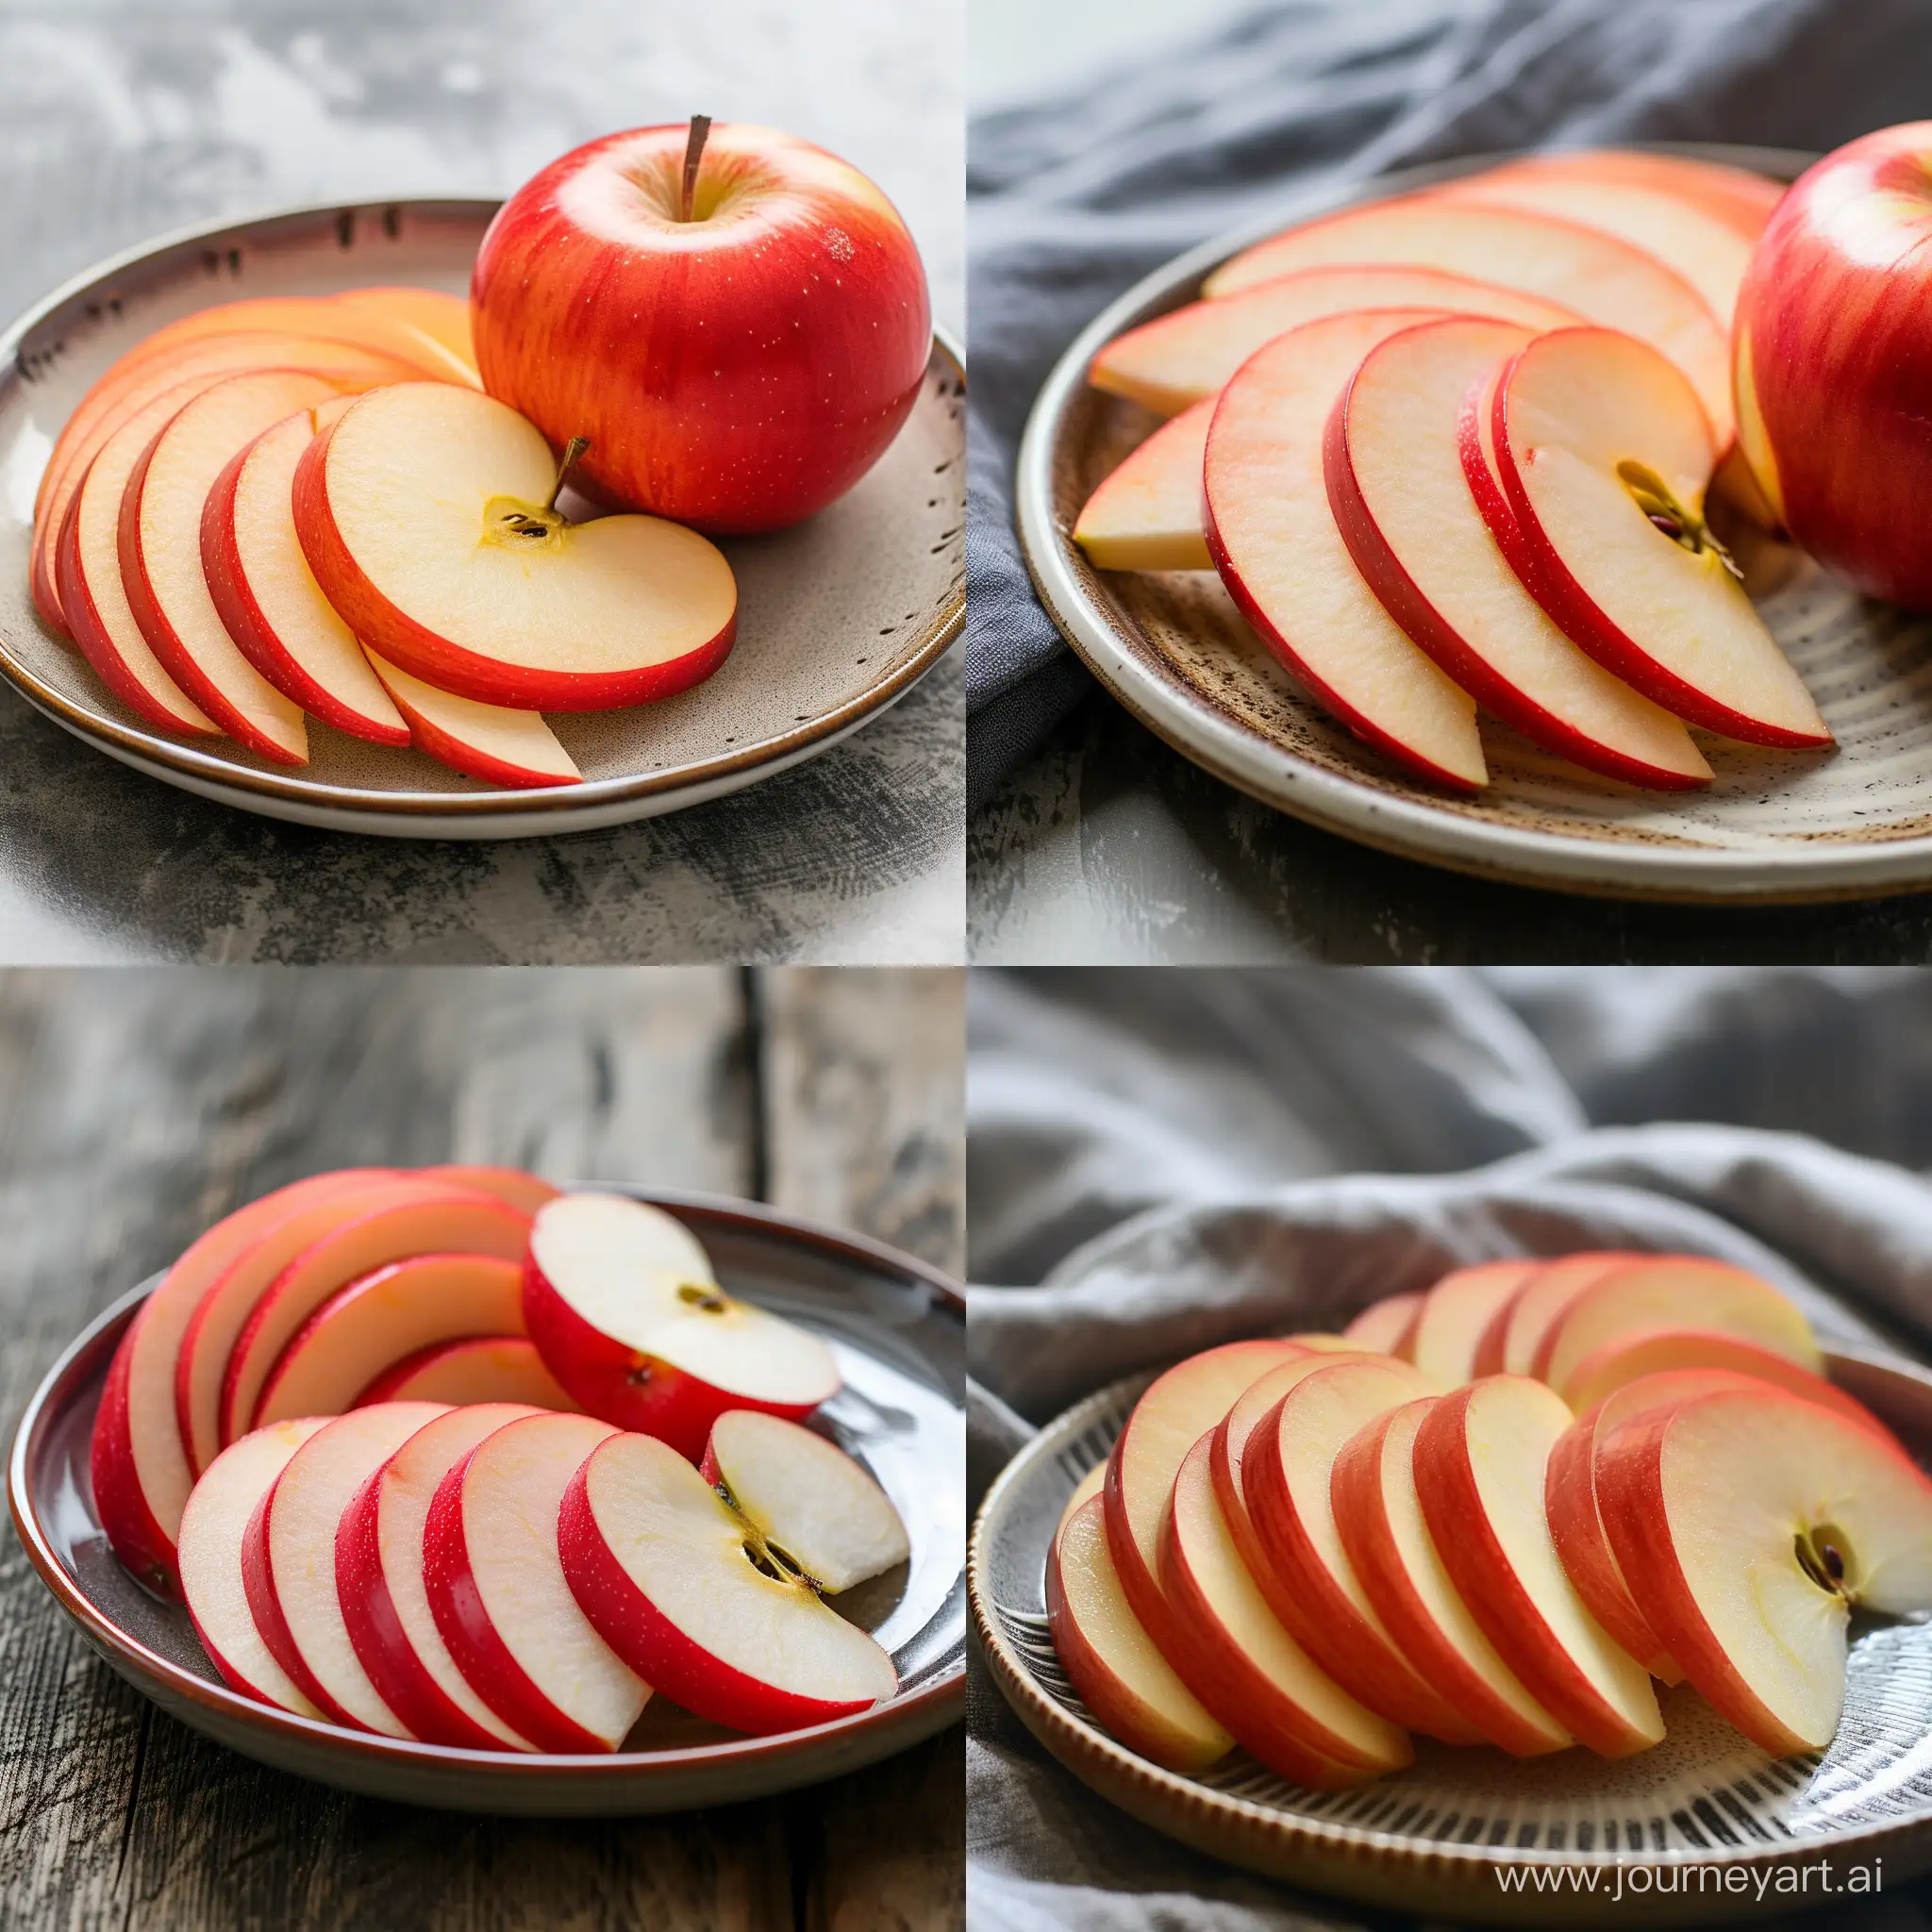 дольки красного яблока на тарелке вид с боку